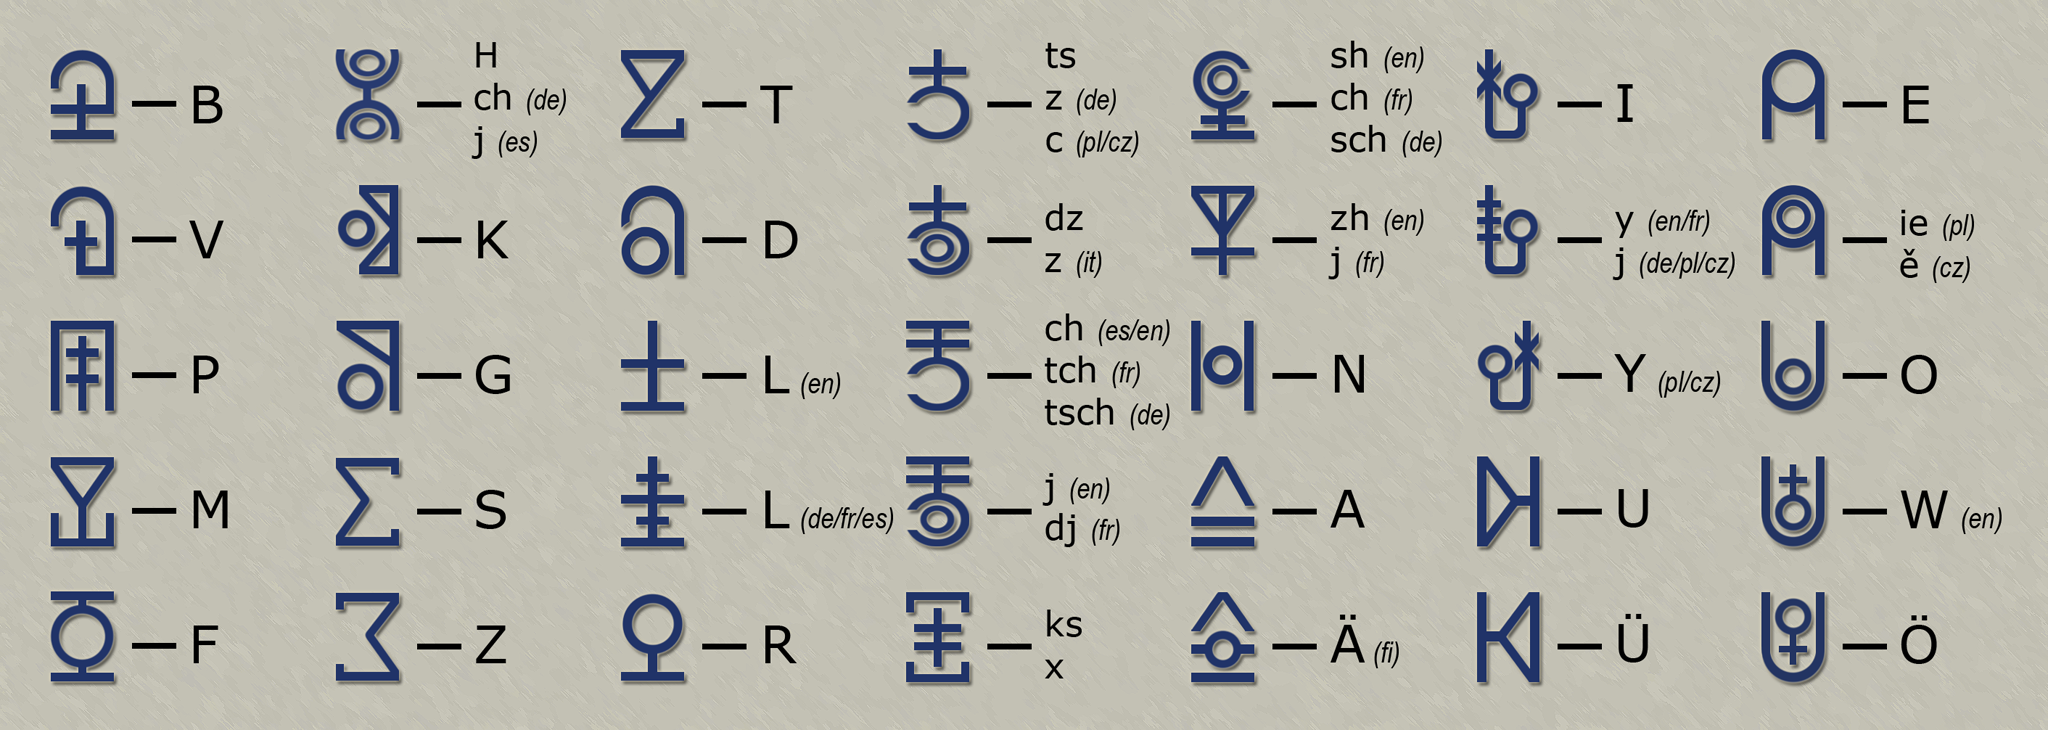 Latin script comparsion